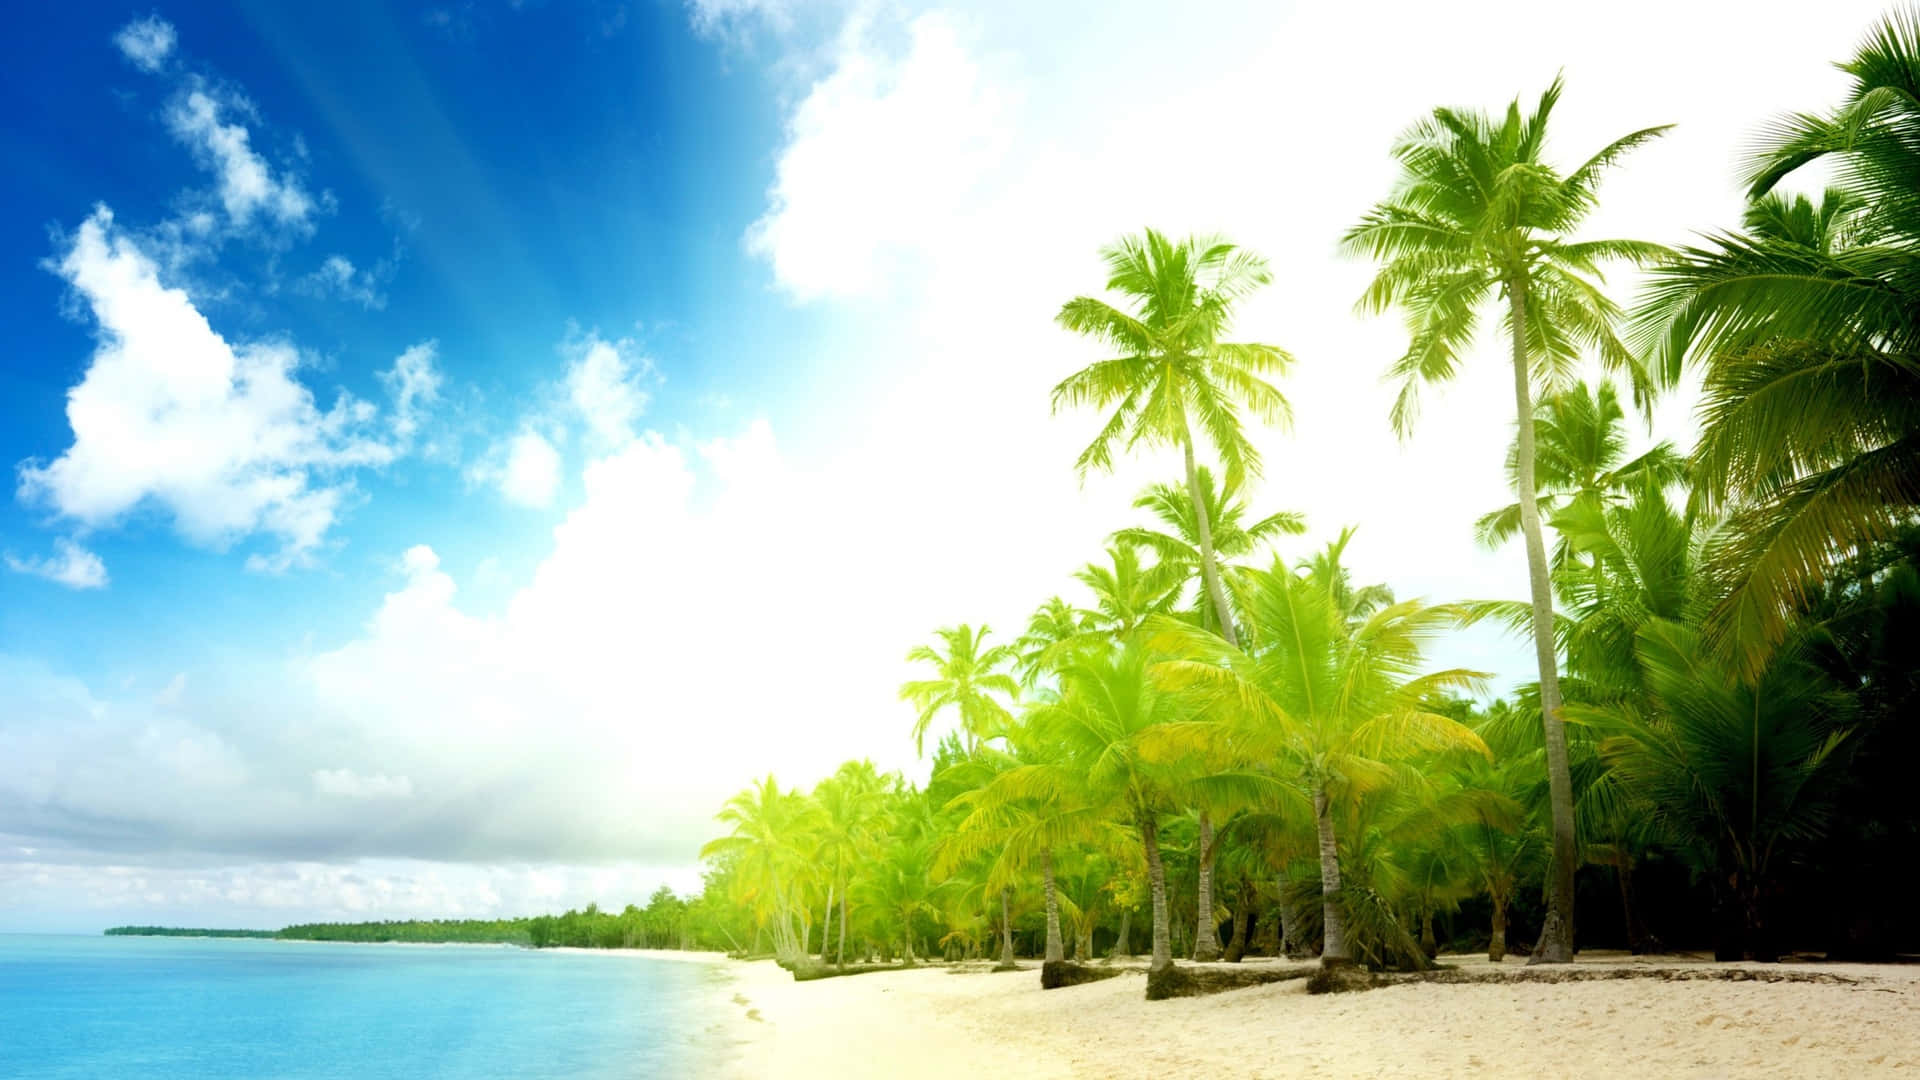 Njutav Den Perfekta Lugnande Miljön På Palm Tree Beach. Wallpaper